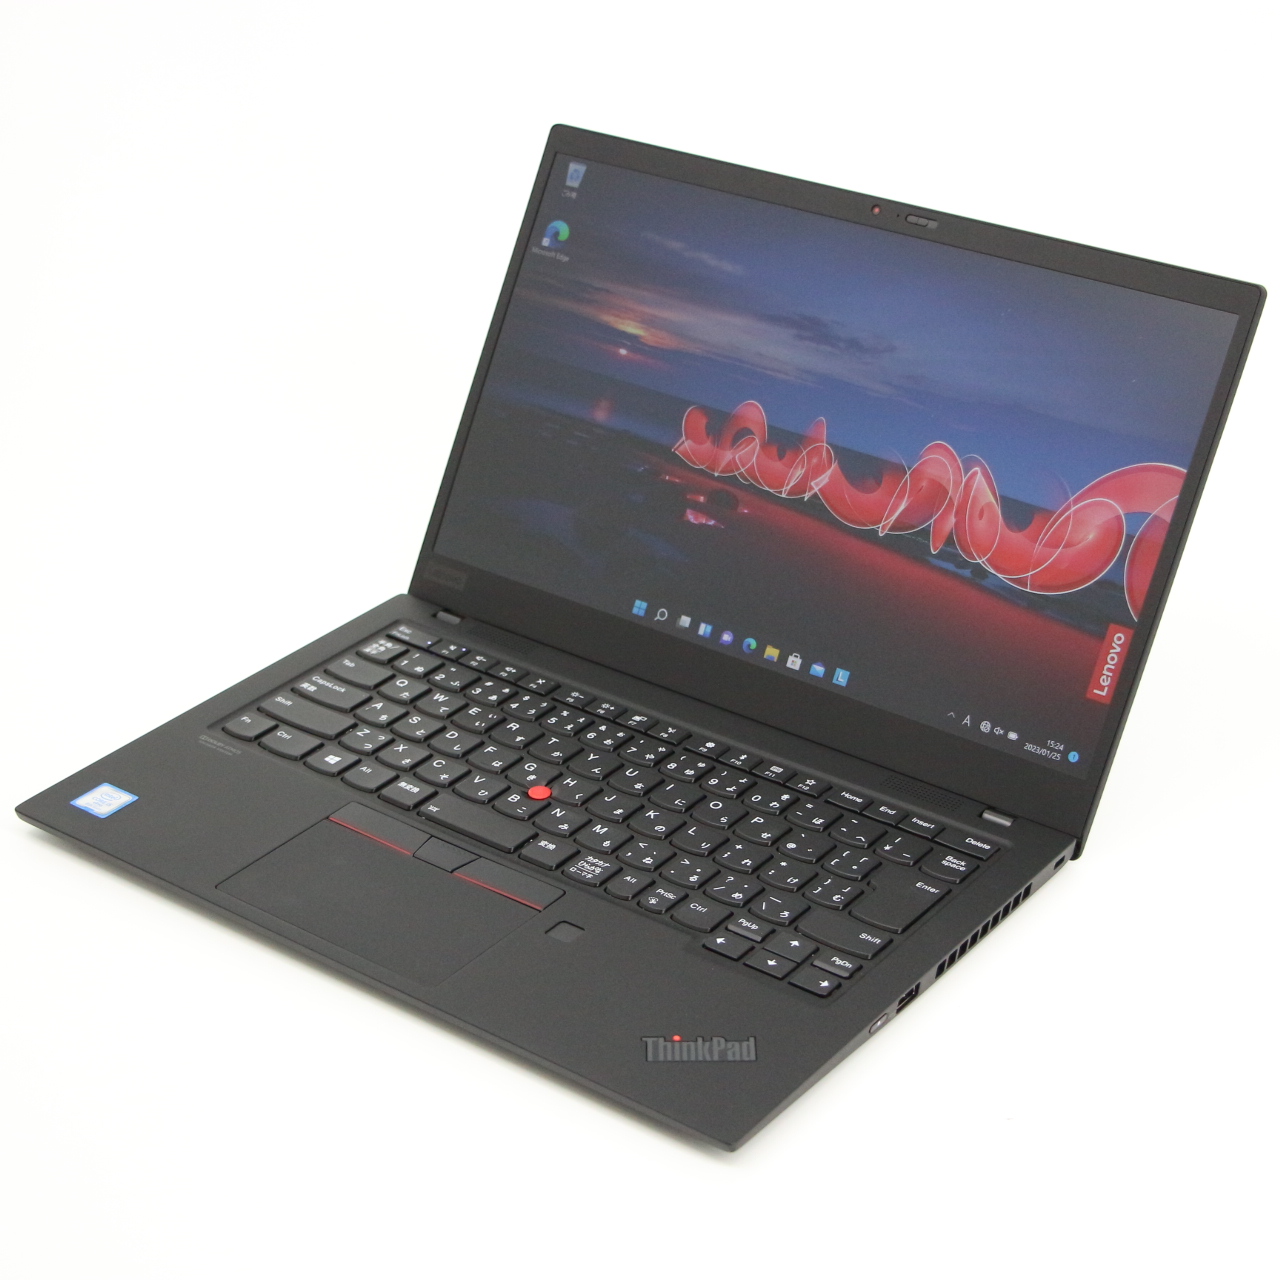 【Win11】ThinkPad X1 Carbon (2019) / 14インチ / Core i5-8365U / 1.6GHz / 8GB / SSD 256GB